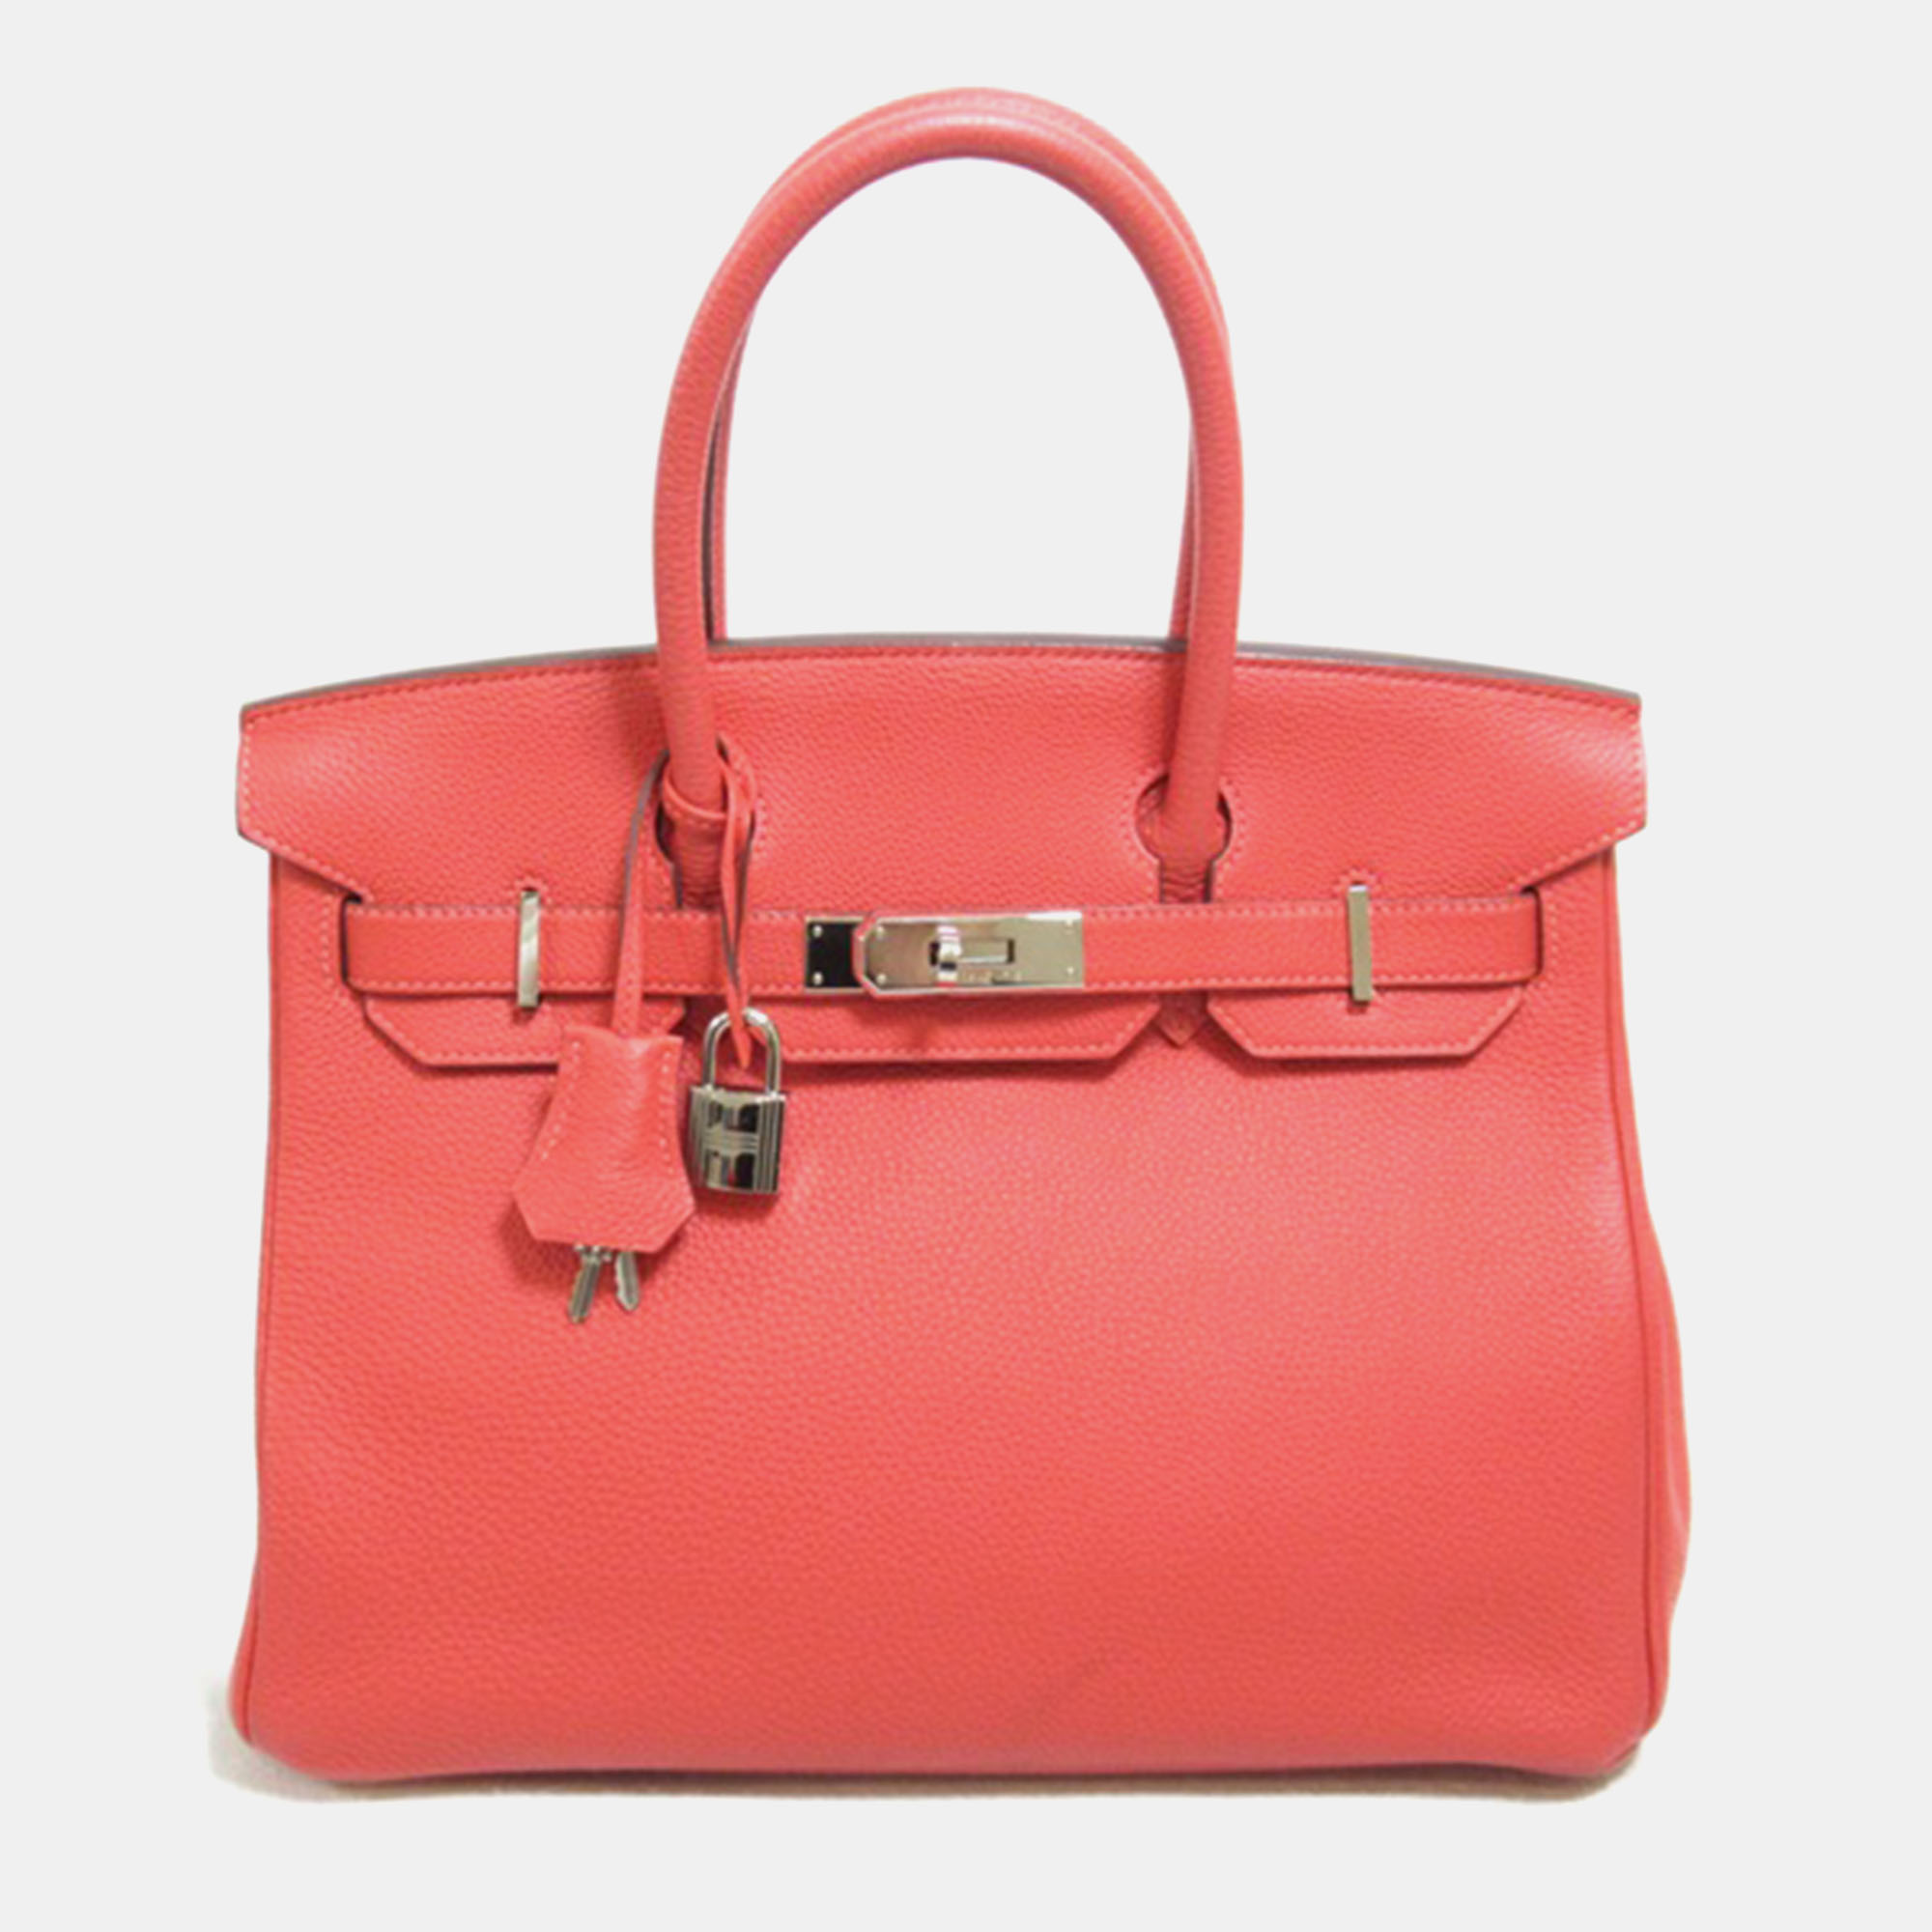 Pre-owned Hermes Red Togo Leather Birkin 30 Handbag In Pink